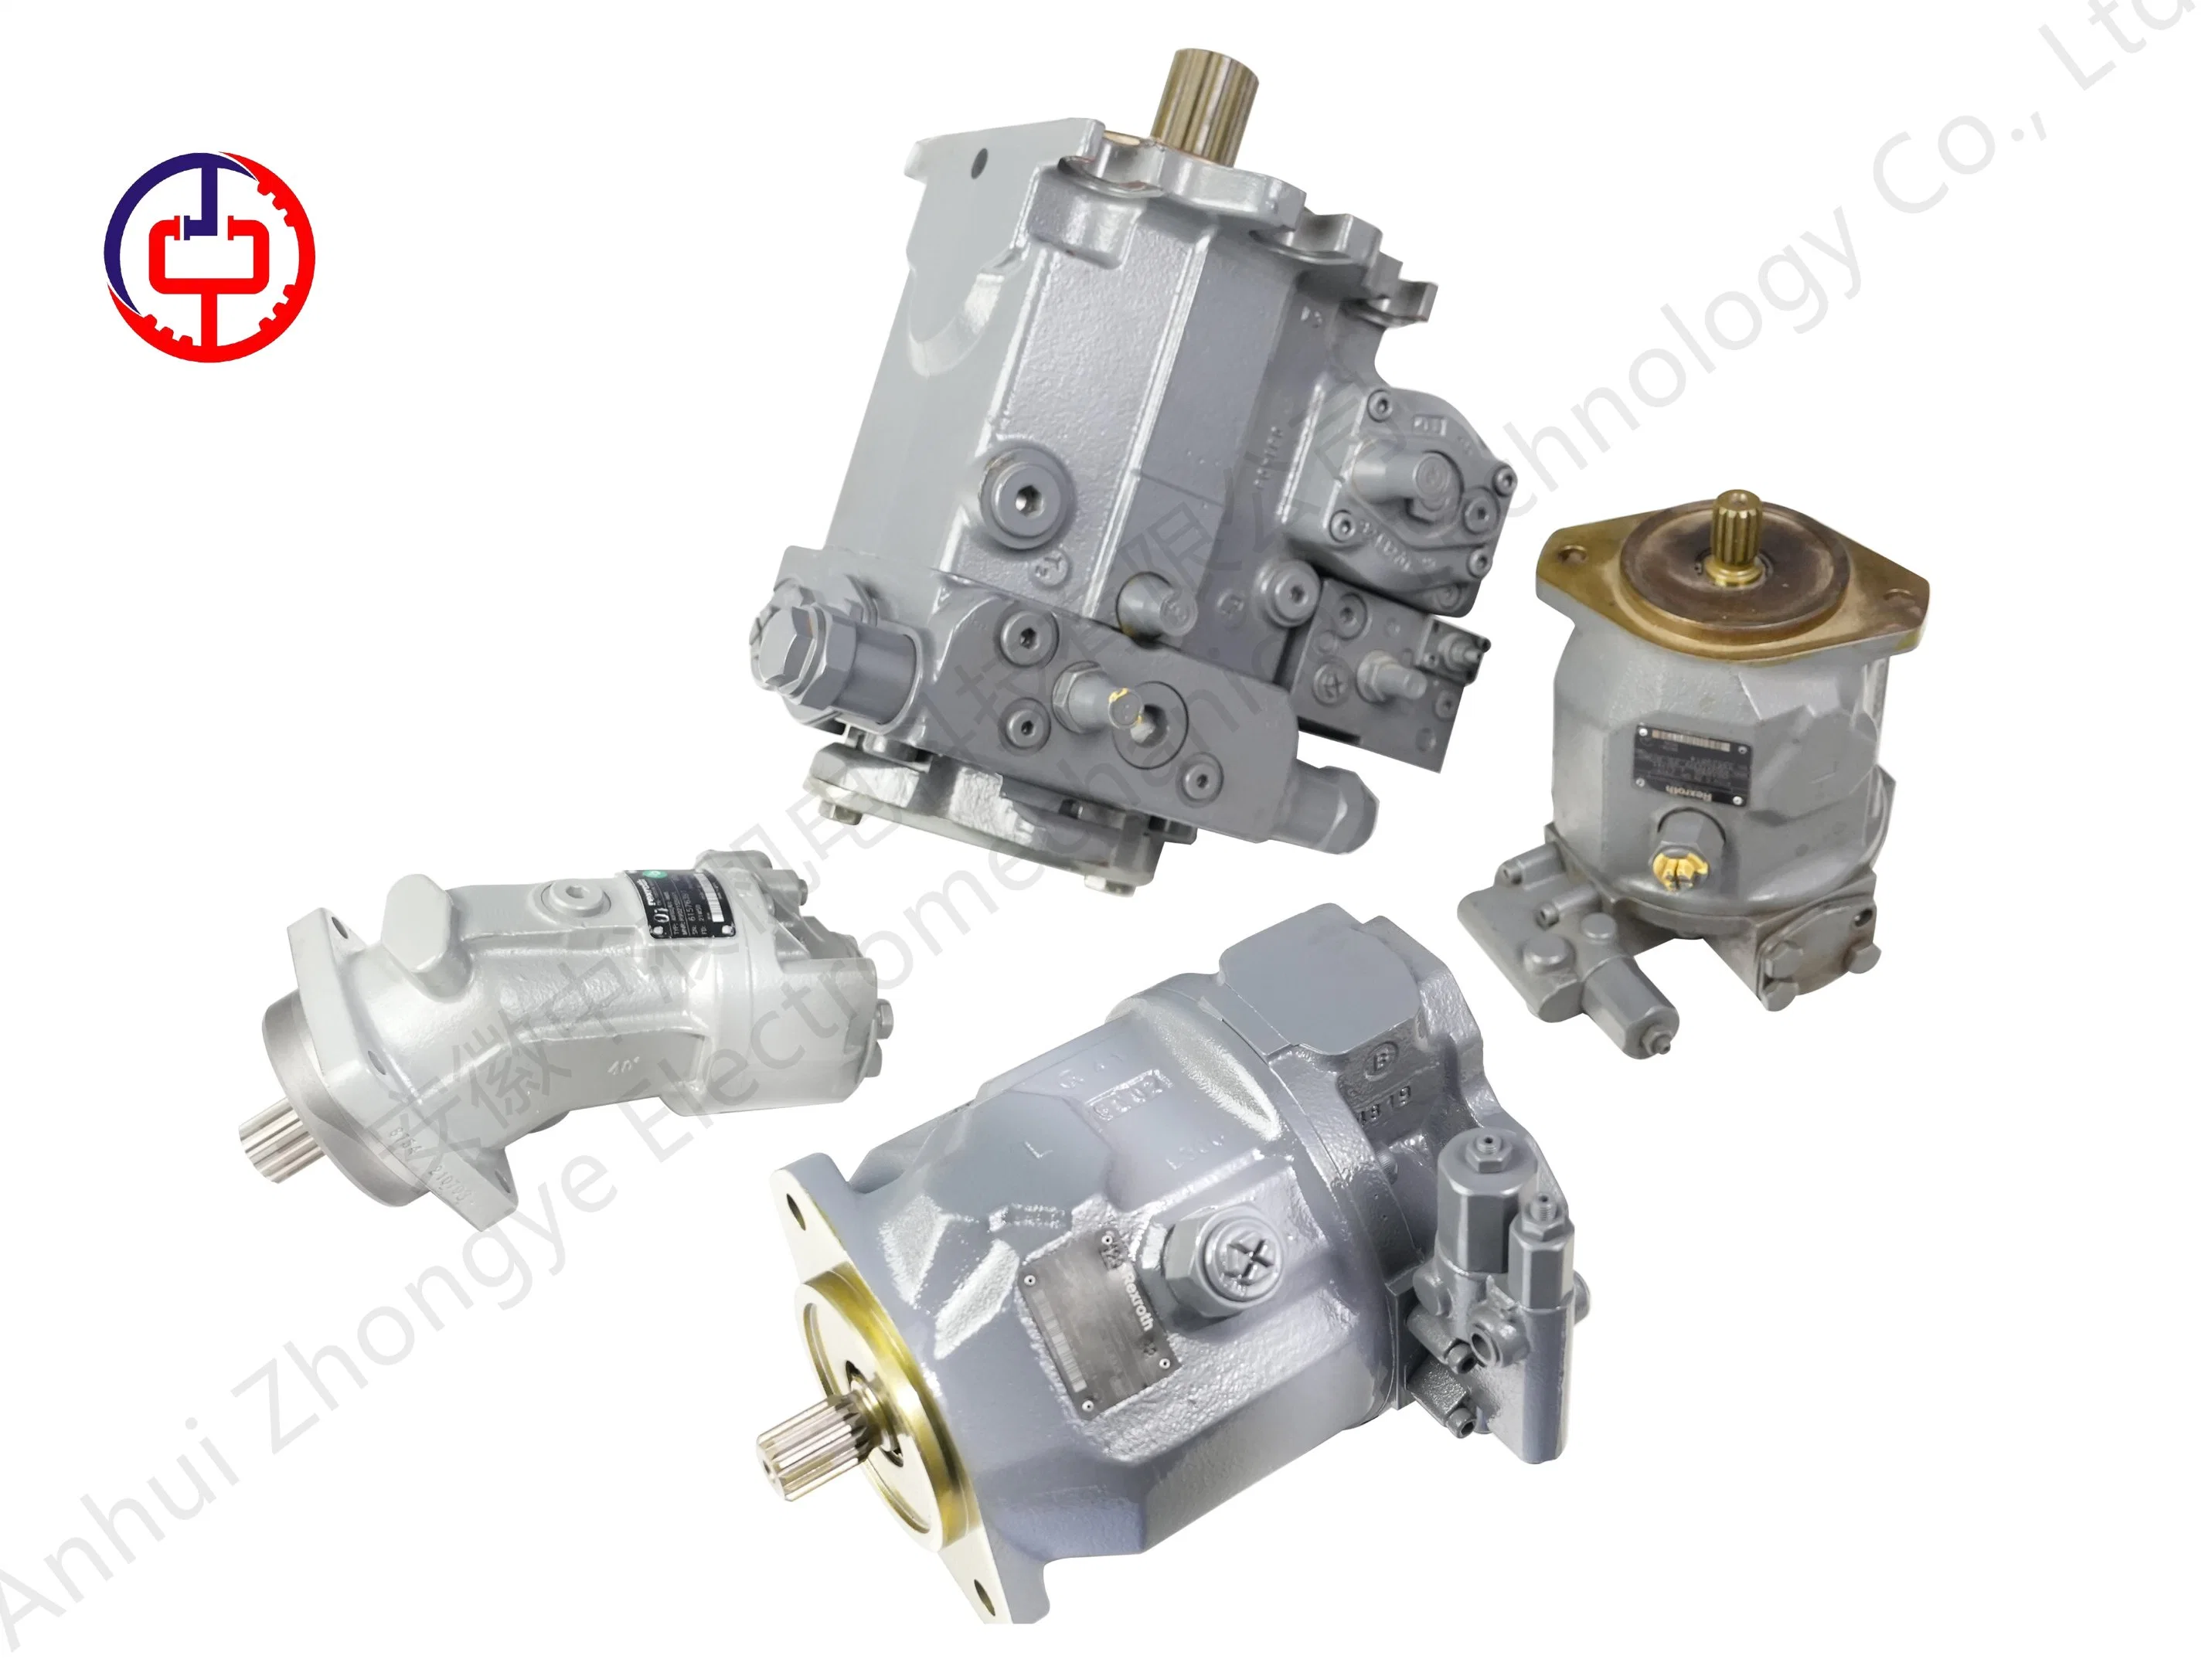 Hydraulic Pump Hydraulic Motor Hydraulic Valve Accessories